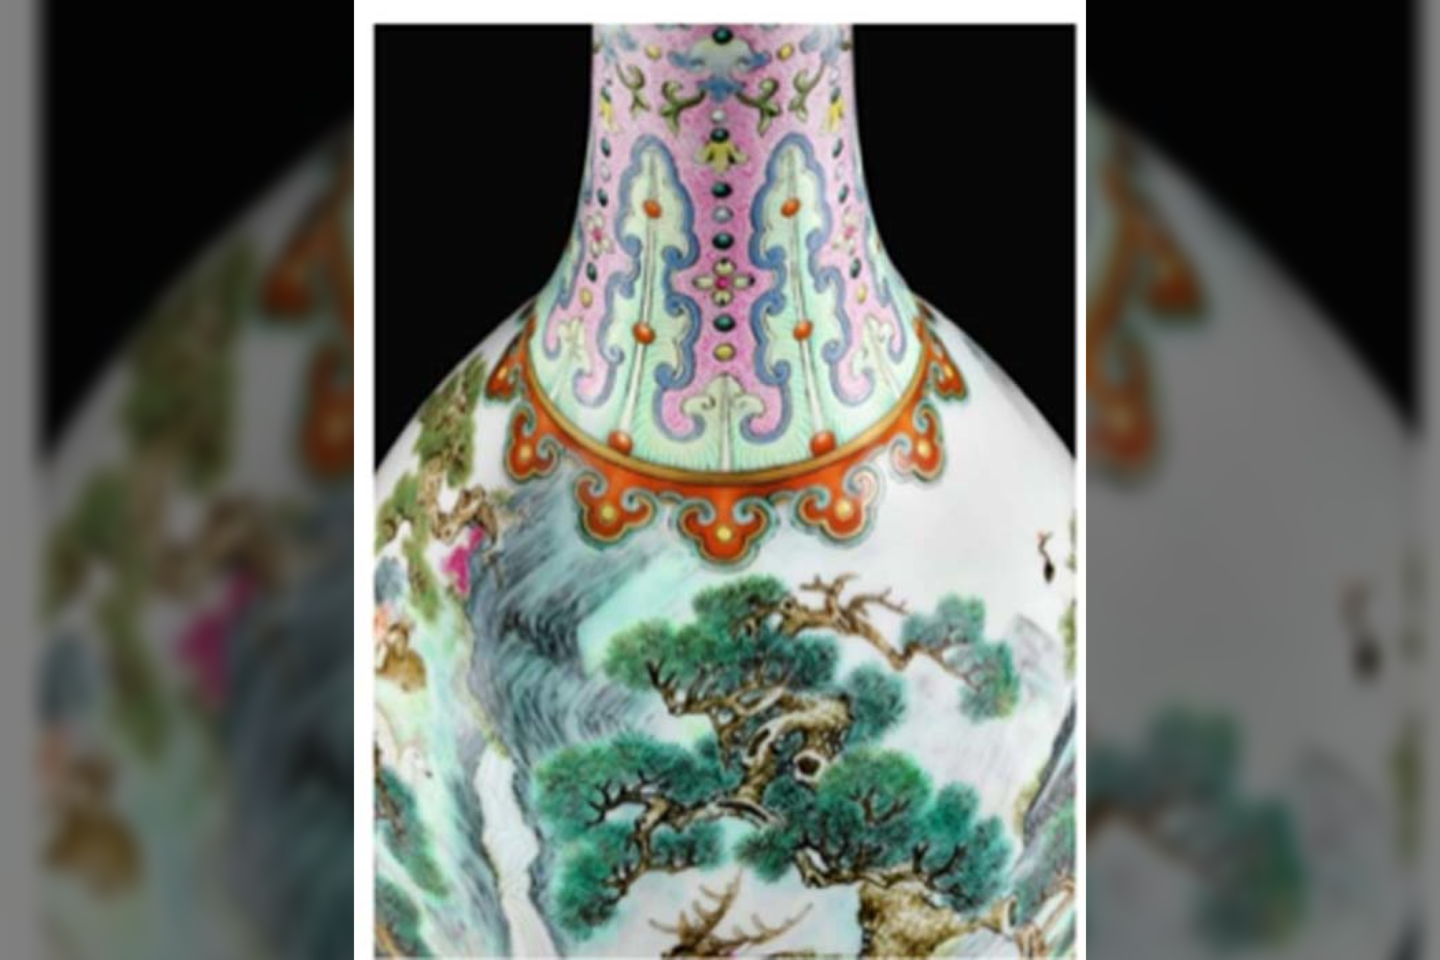 Vaza, kuri praėjusiais metais buvo parduota už 16 mln. eurų. <br>Sotheby's nuotr. 